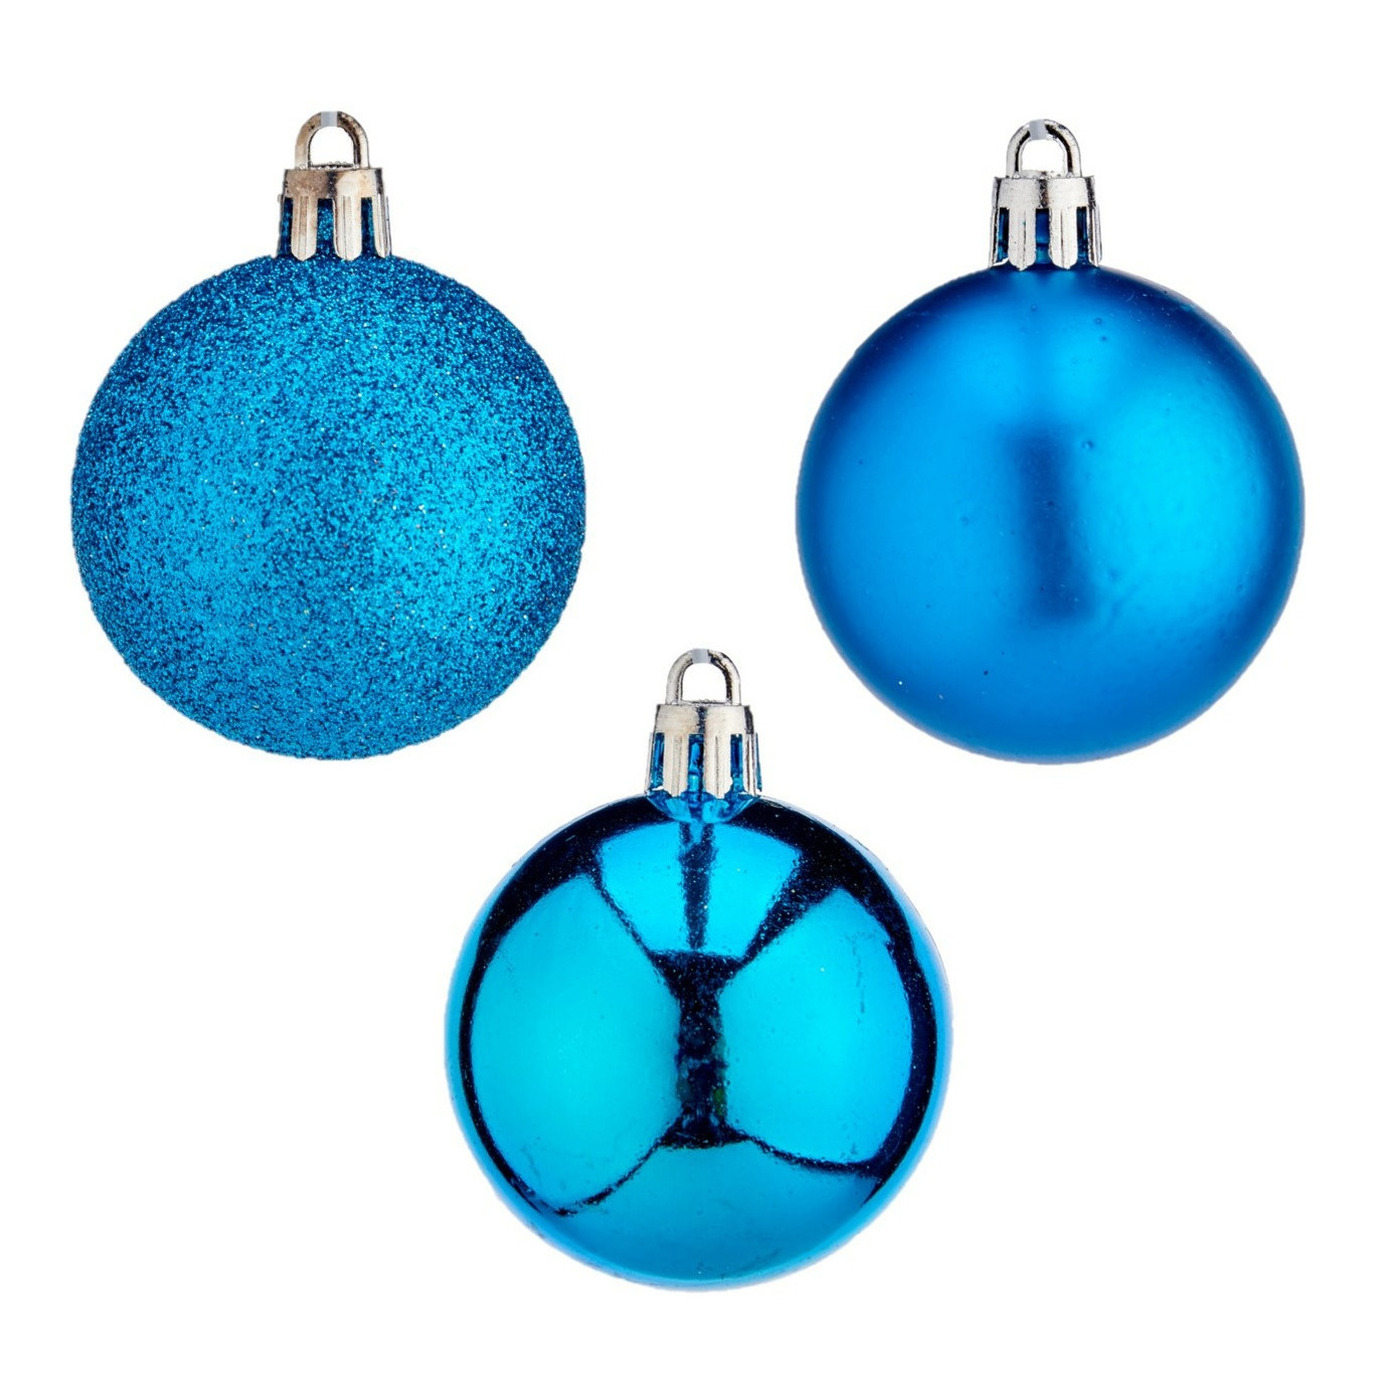 24x stuks kerstballen helder blauw kunststof 5 cm glitter, glans, mat